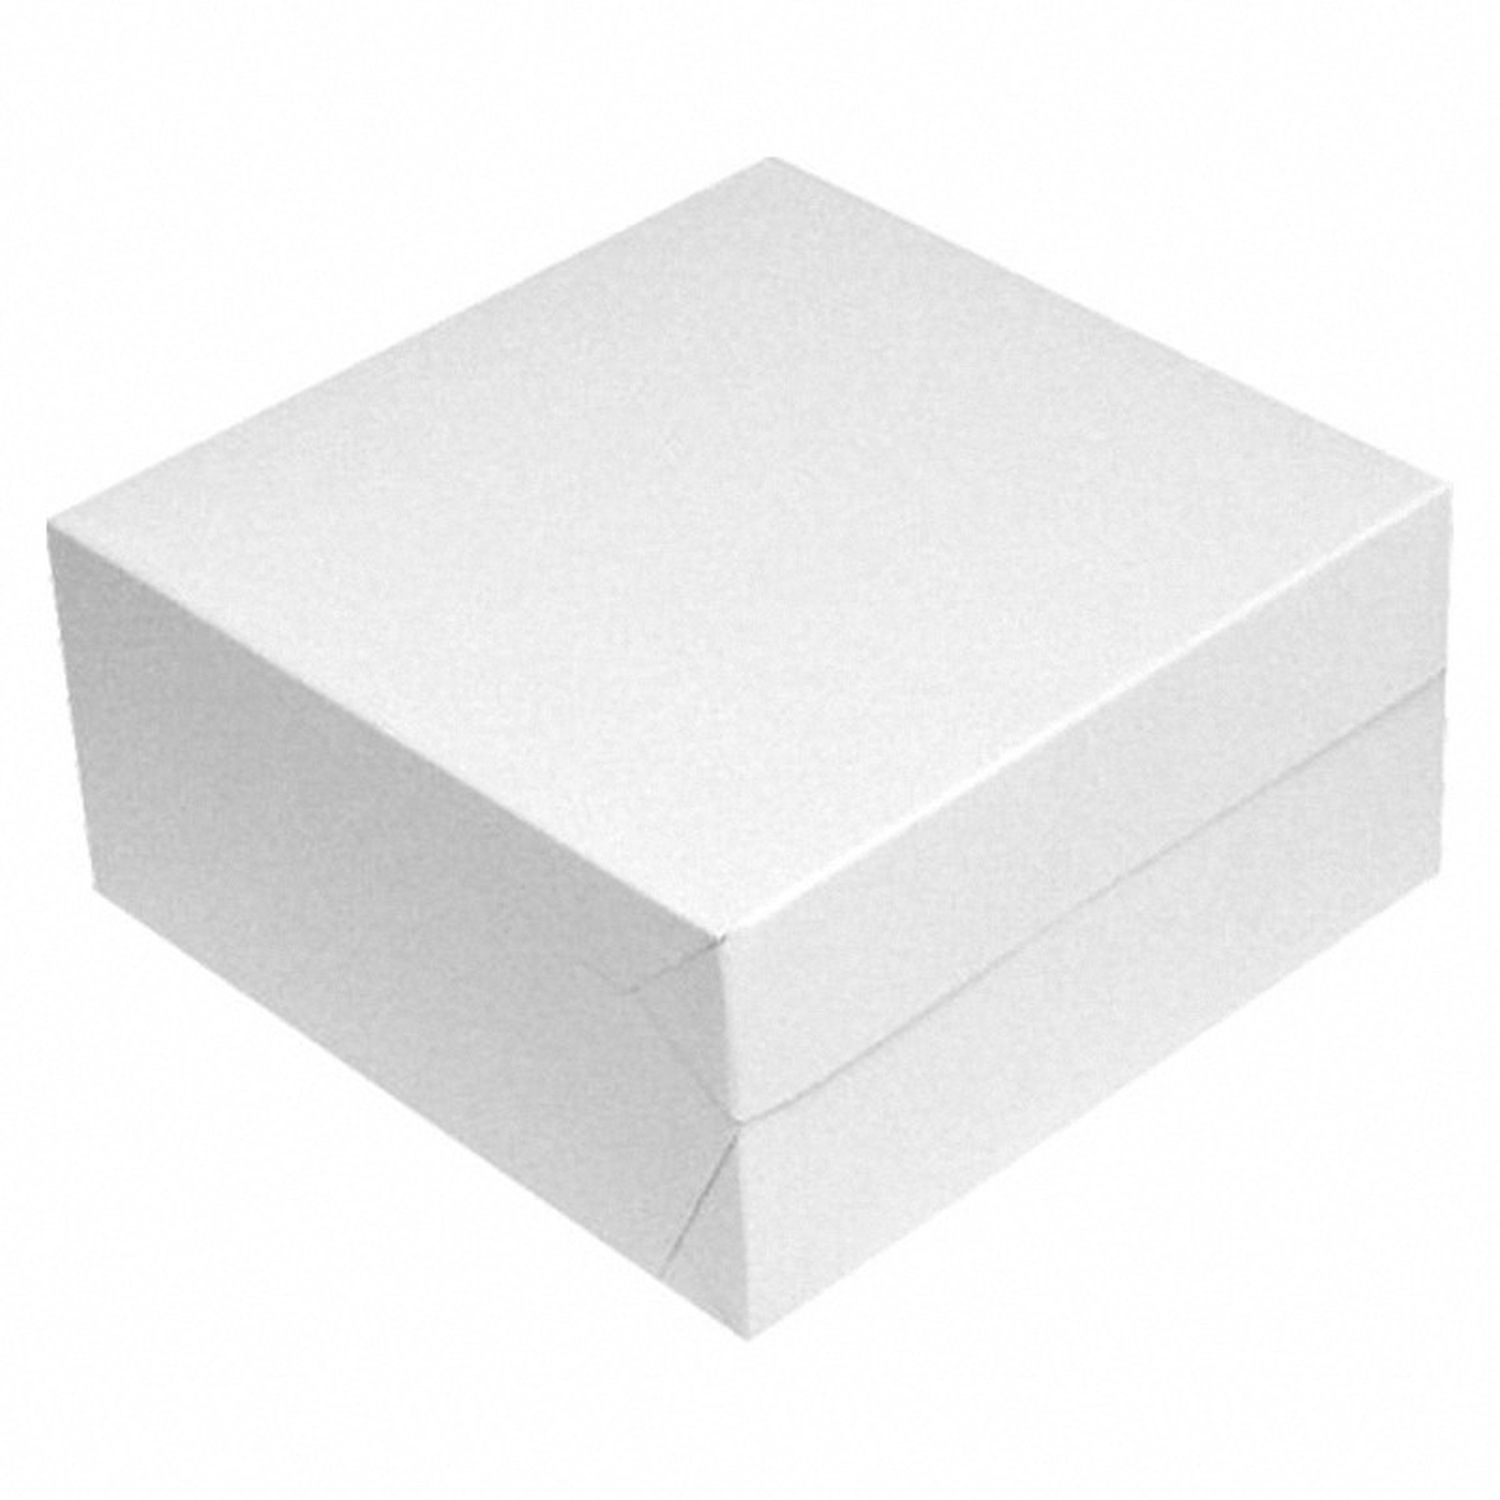 Kuchenkarton Tortenkarton 20x20x8cm mit Fenster aus Pappe Weiß, 